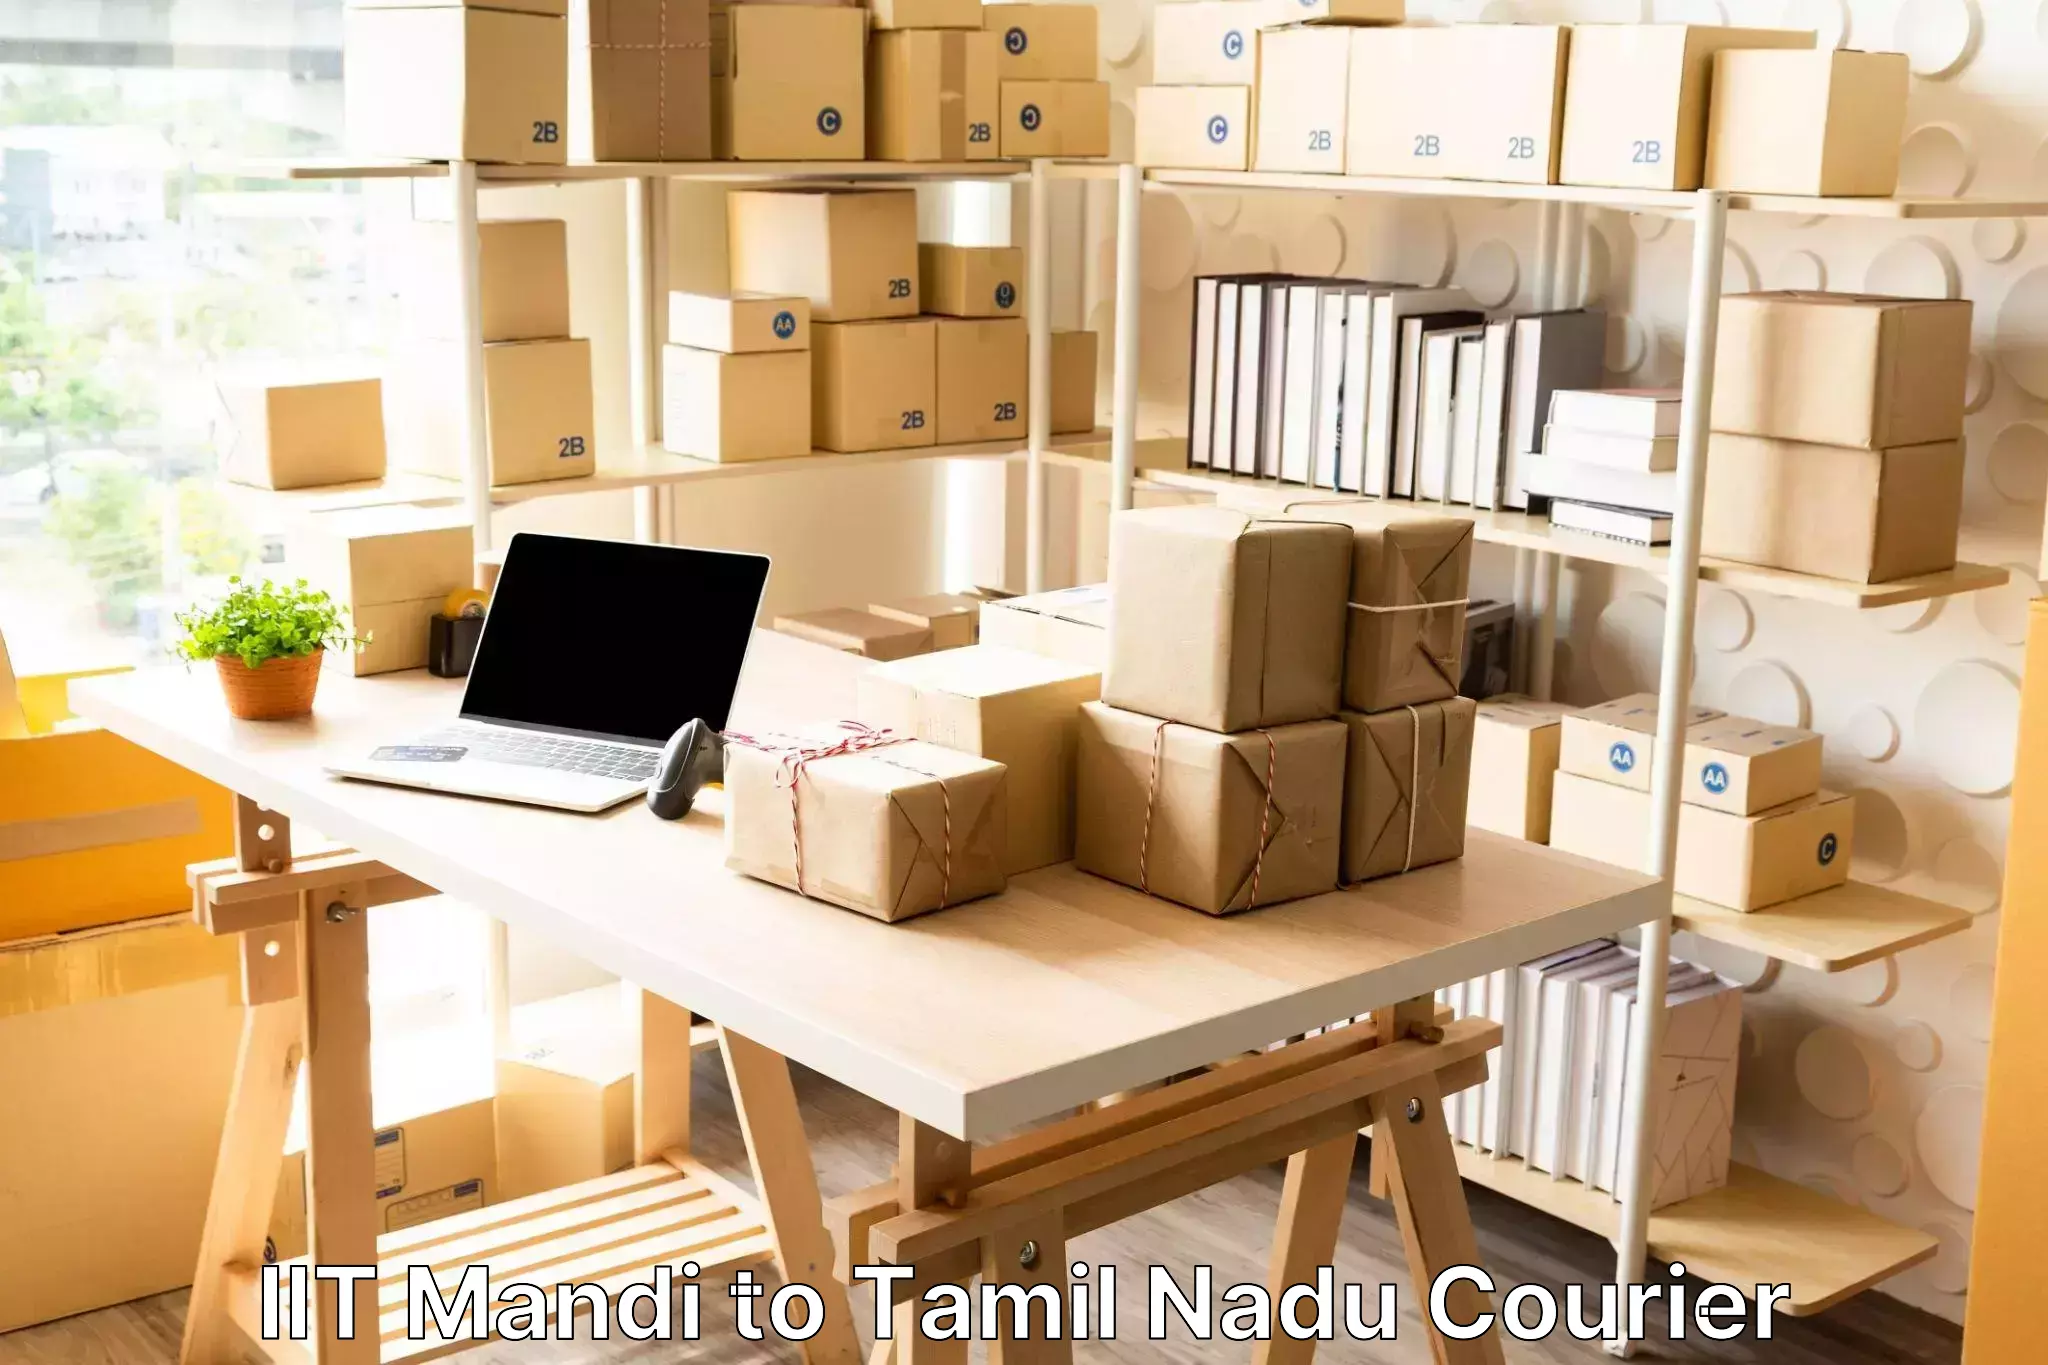 Doorstep luggage pickup in IIT Mandi to Tamil Nadu